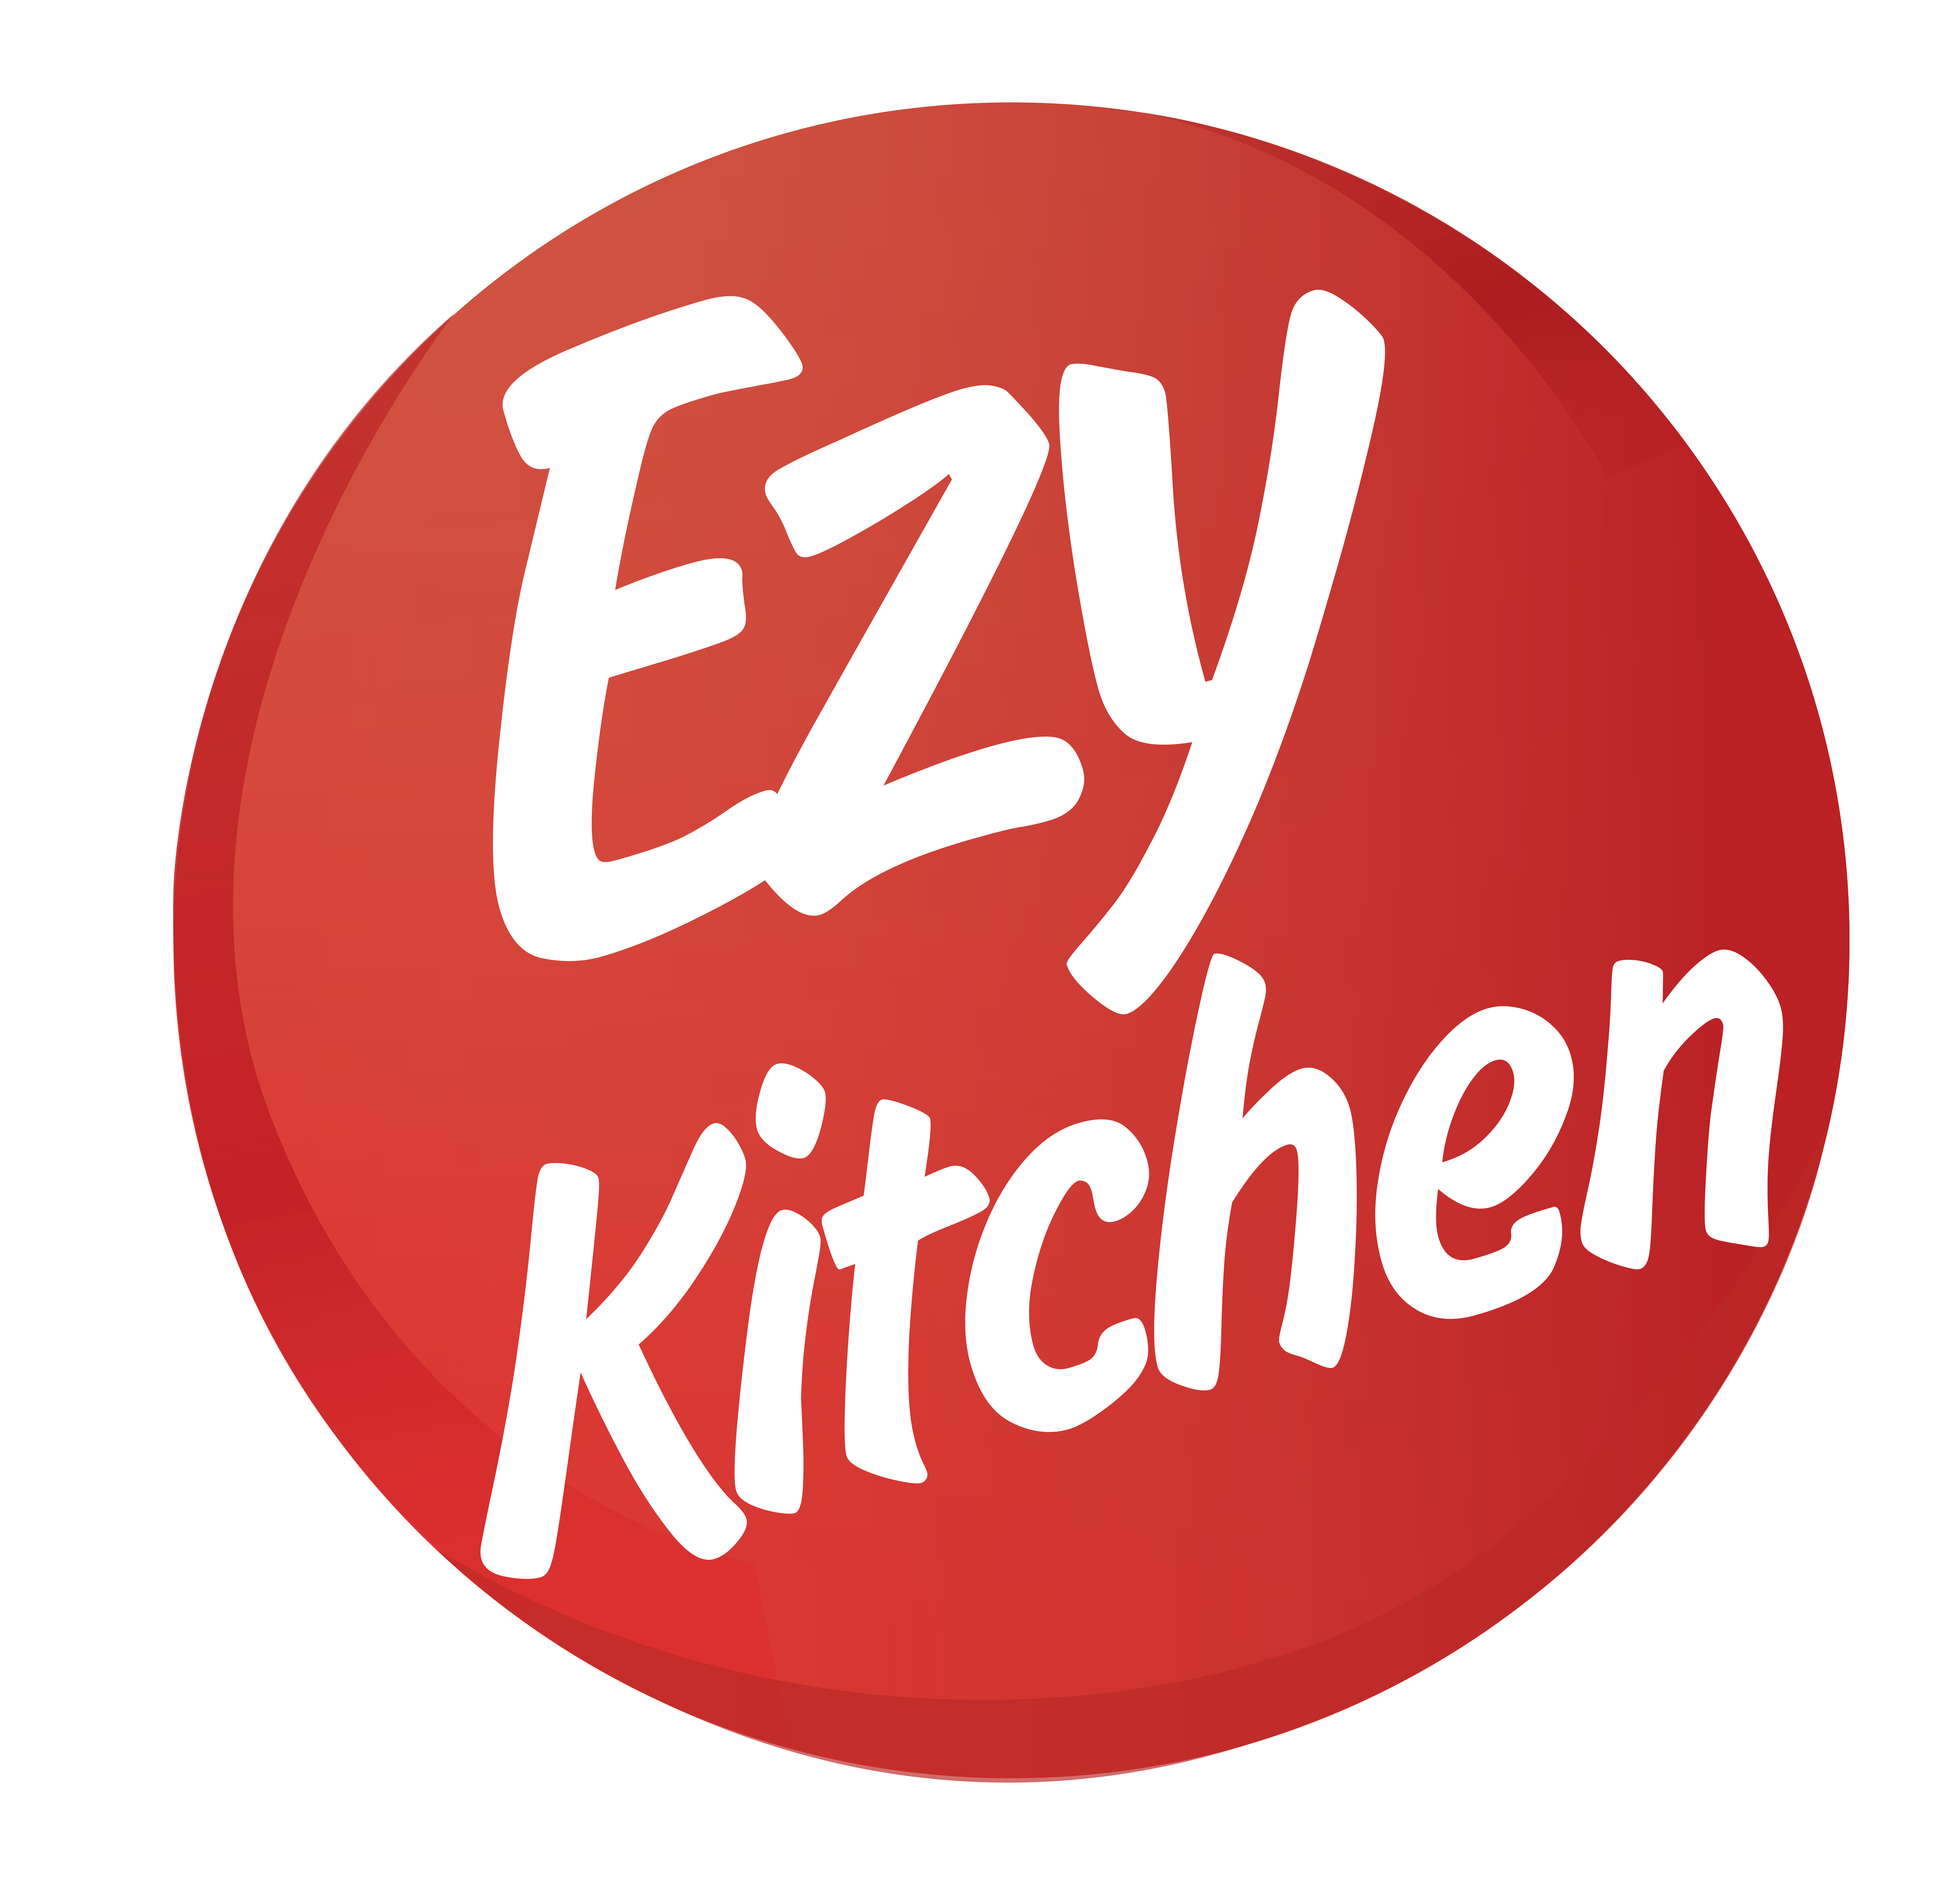 ezybiz_kitchen_logo